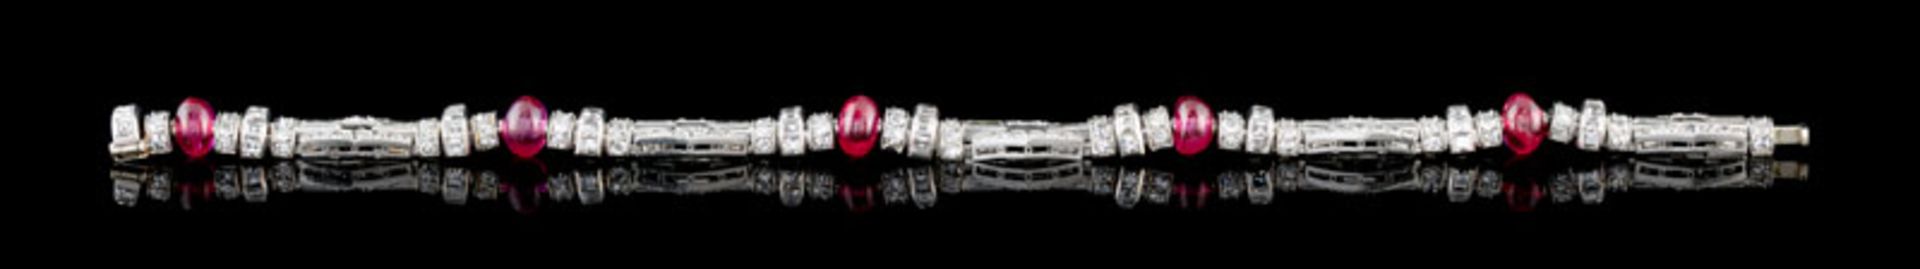 Verger Frères, 2 bracelets Art Déco articulé, platine à décor pavé de diamants et de billes de rubis - Image 3 of 5